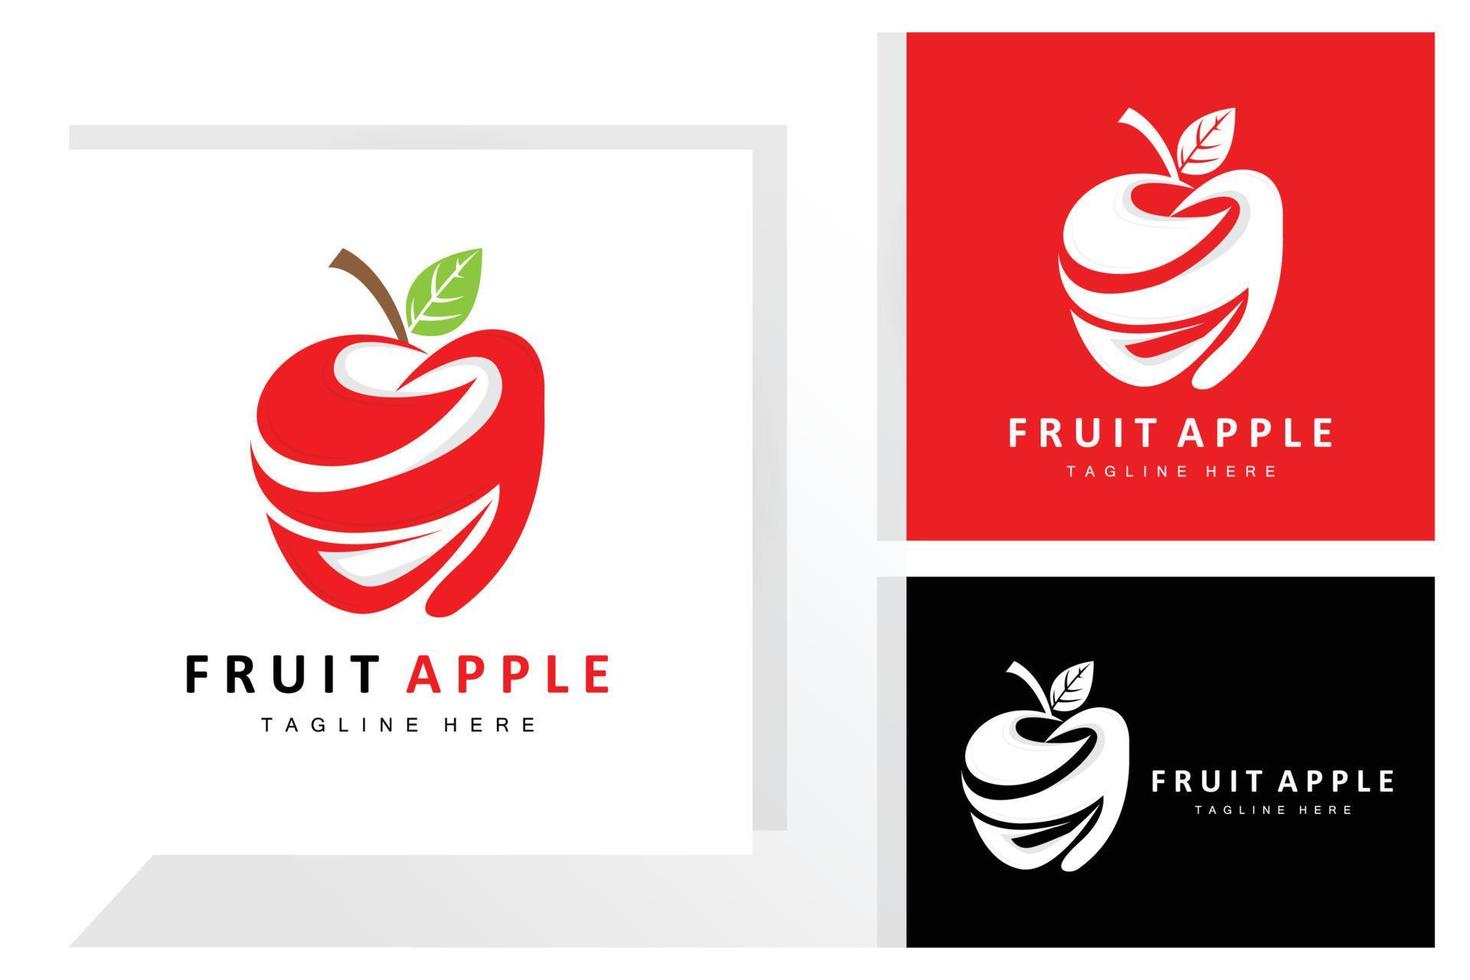 frutta Mela logo disegno, rosso frutta vettore, con astratto stile, Prodotto marca etichetta illustrazione vettore